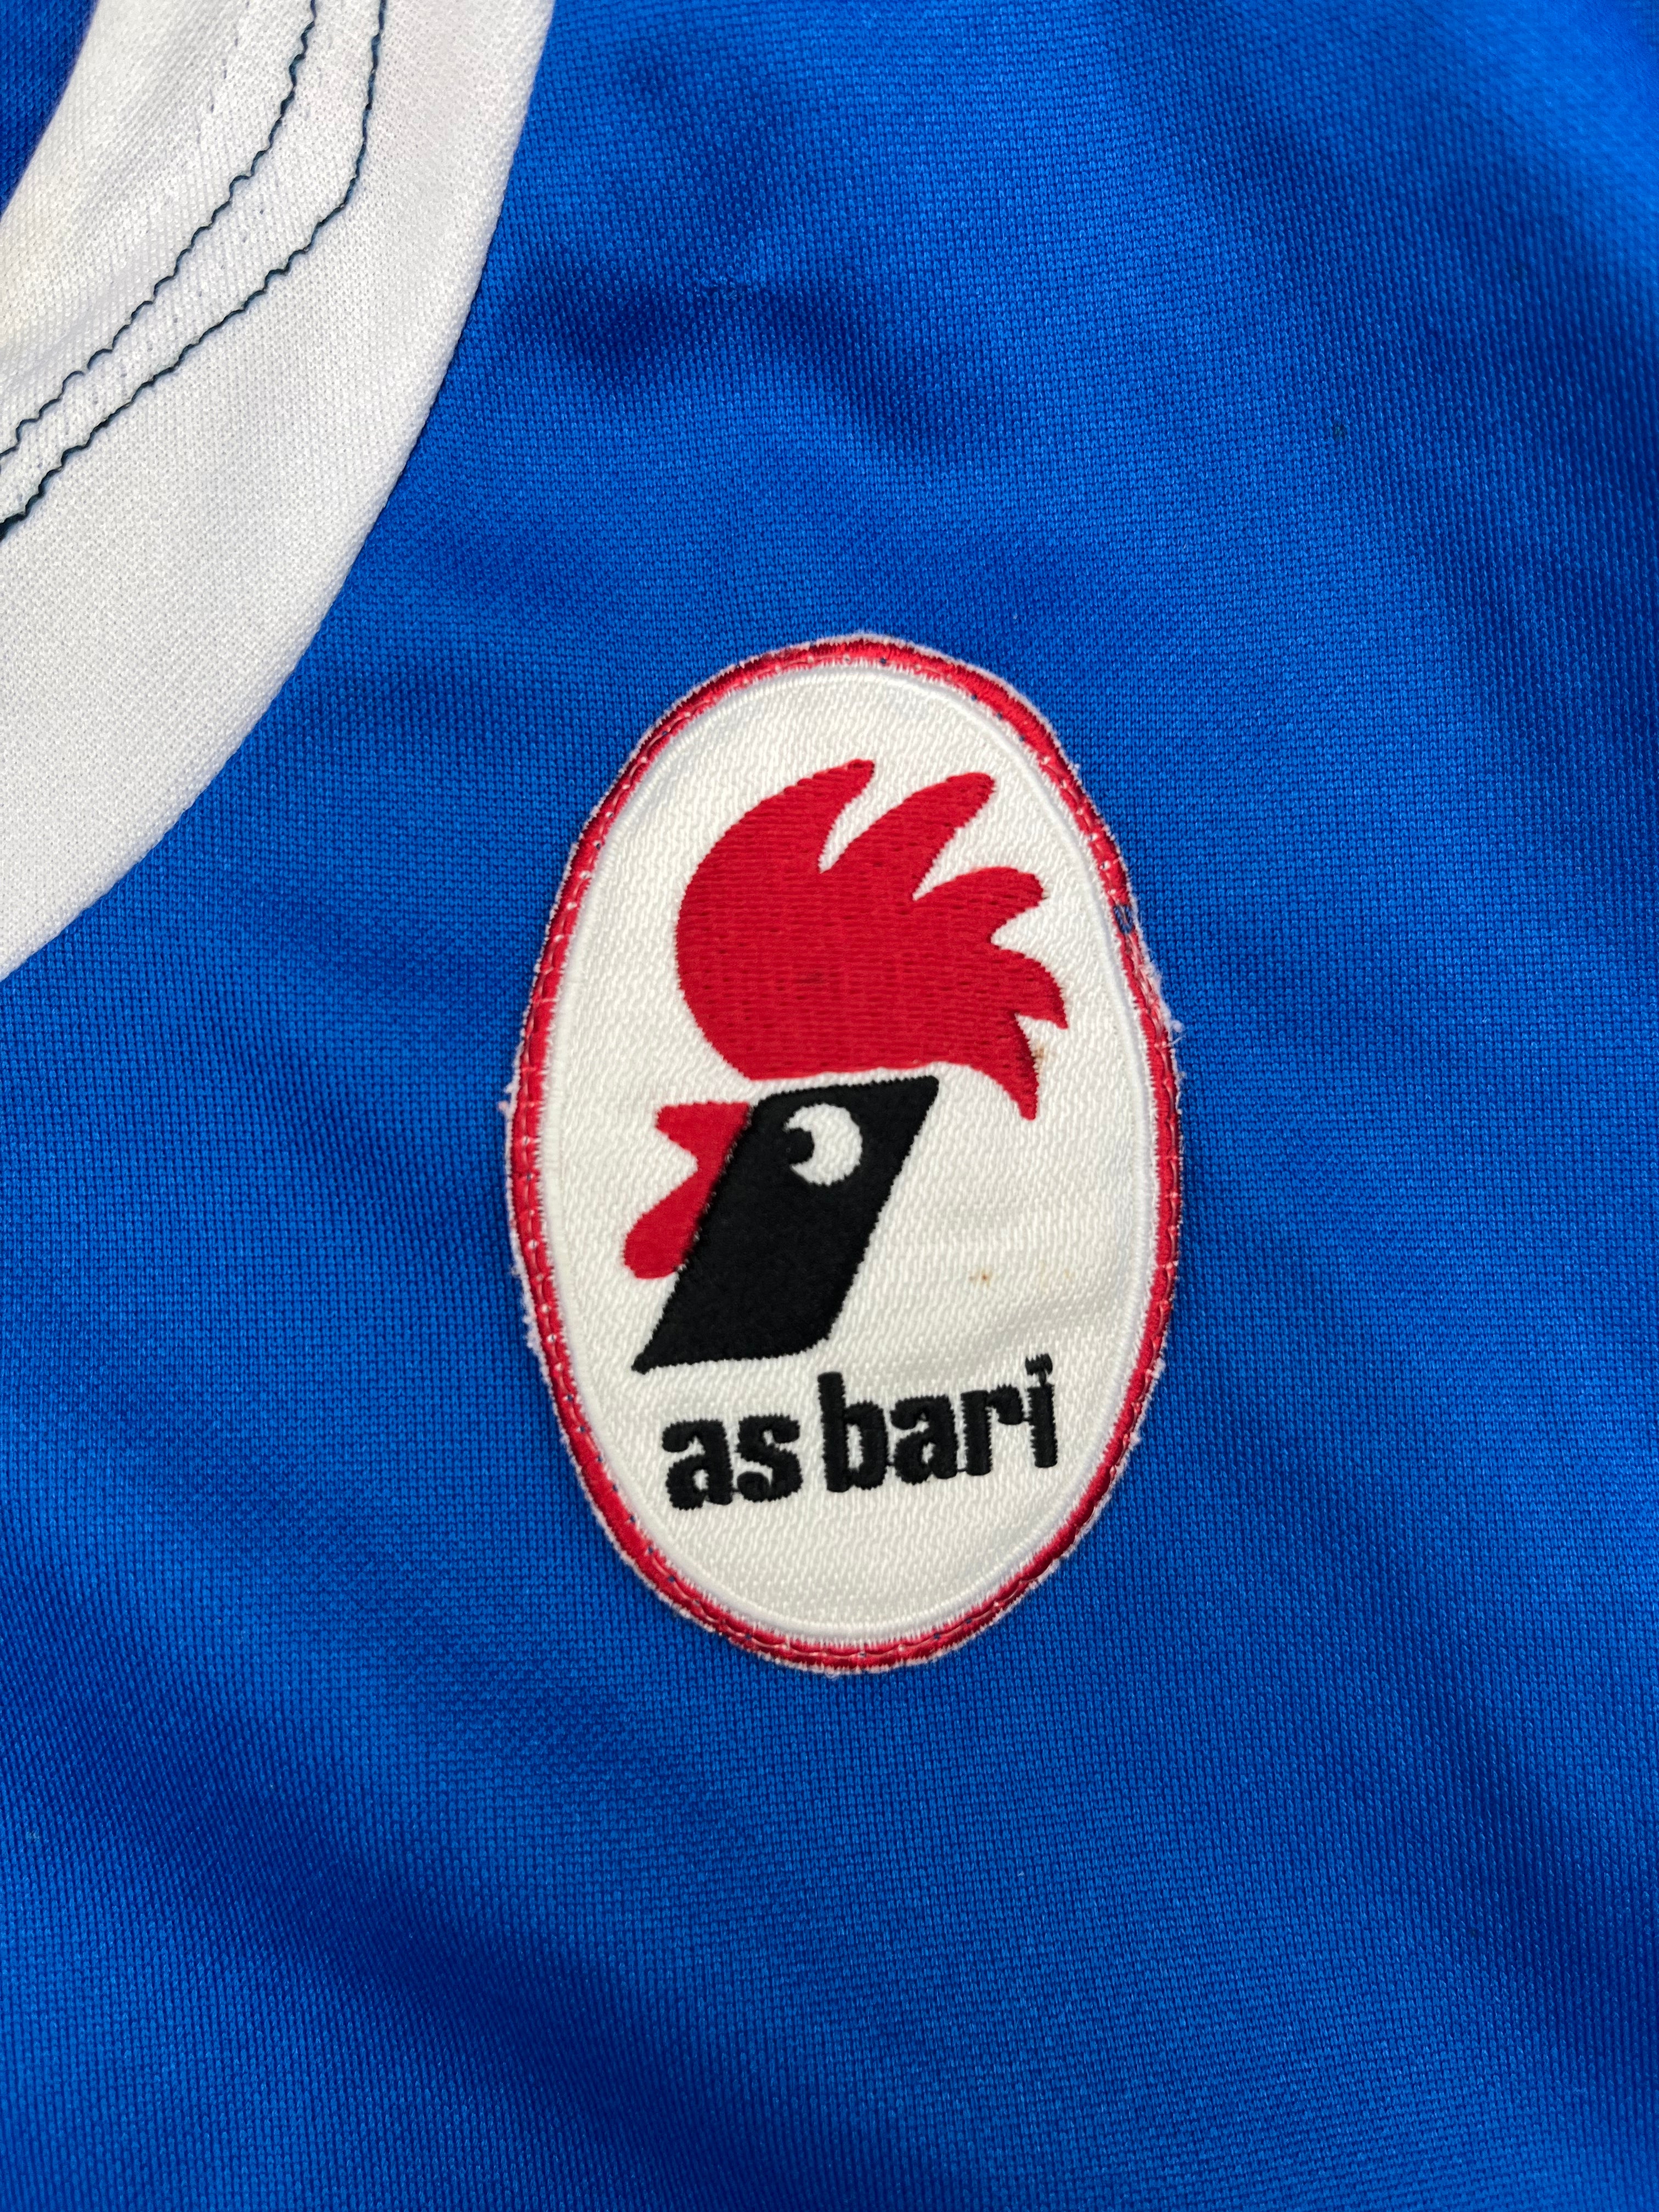 2006/07 Bari Training Shirt (XL) 7.5/10